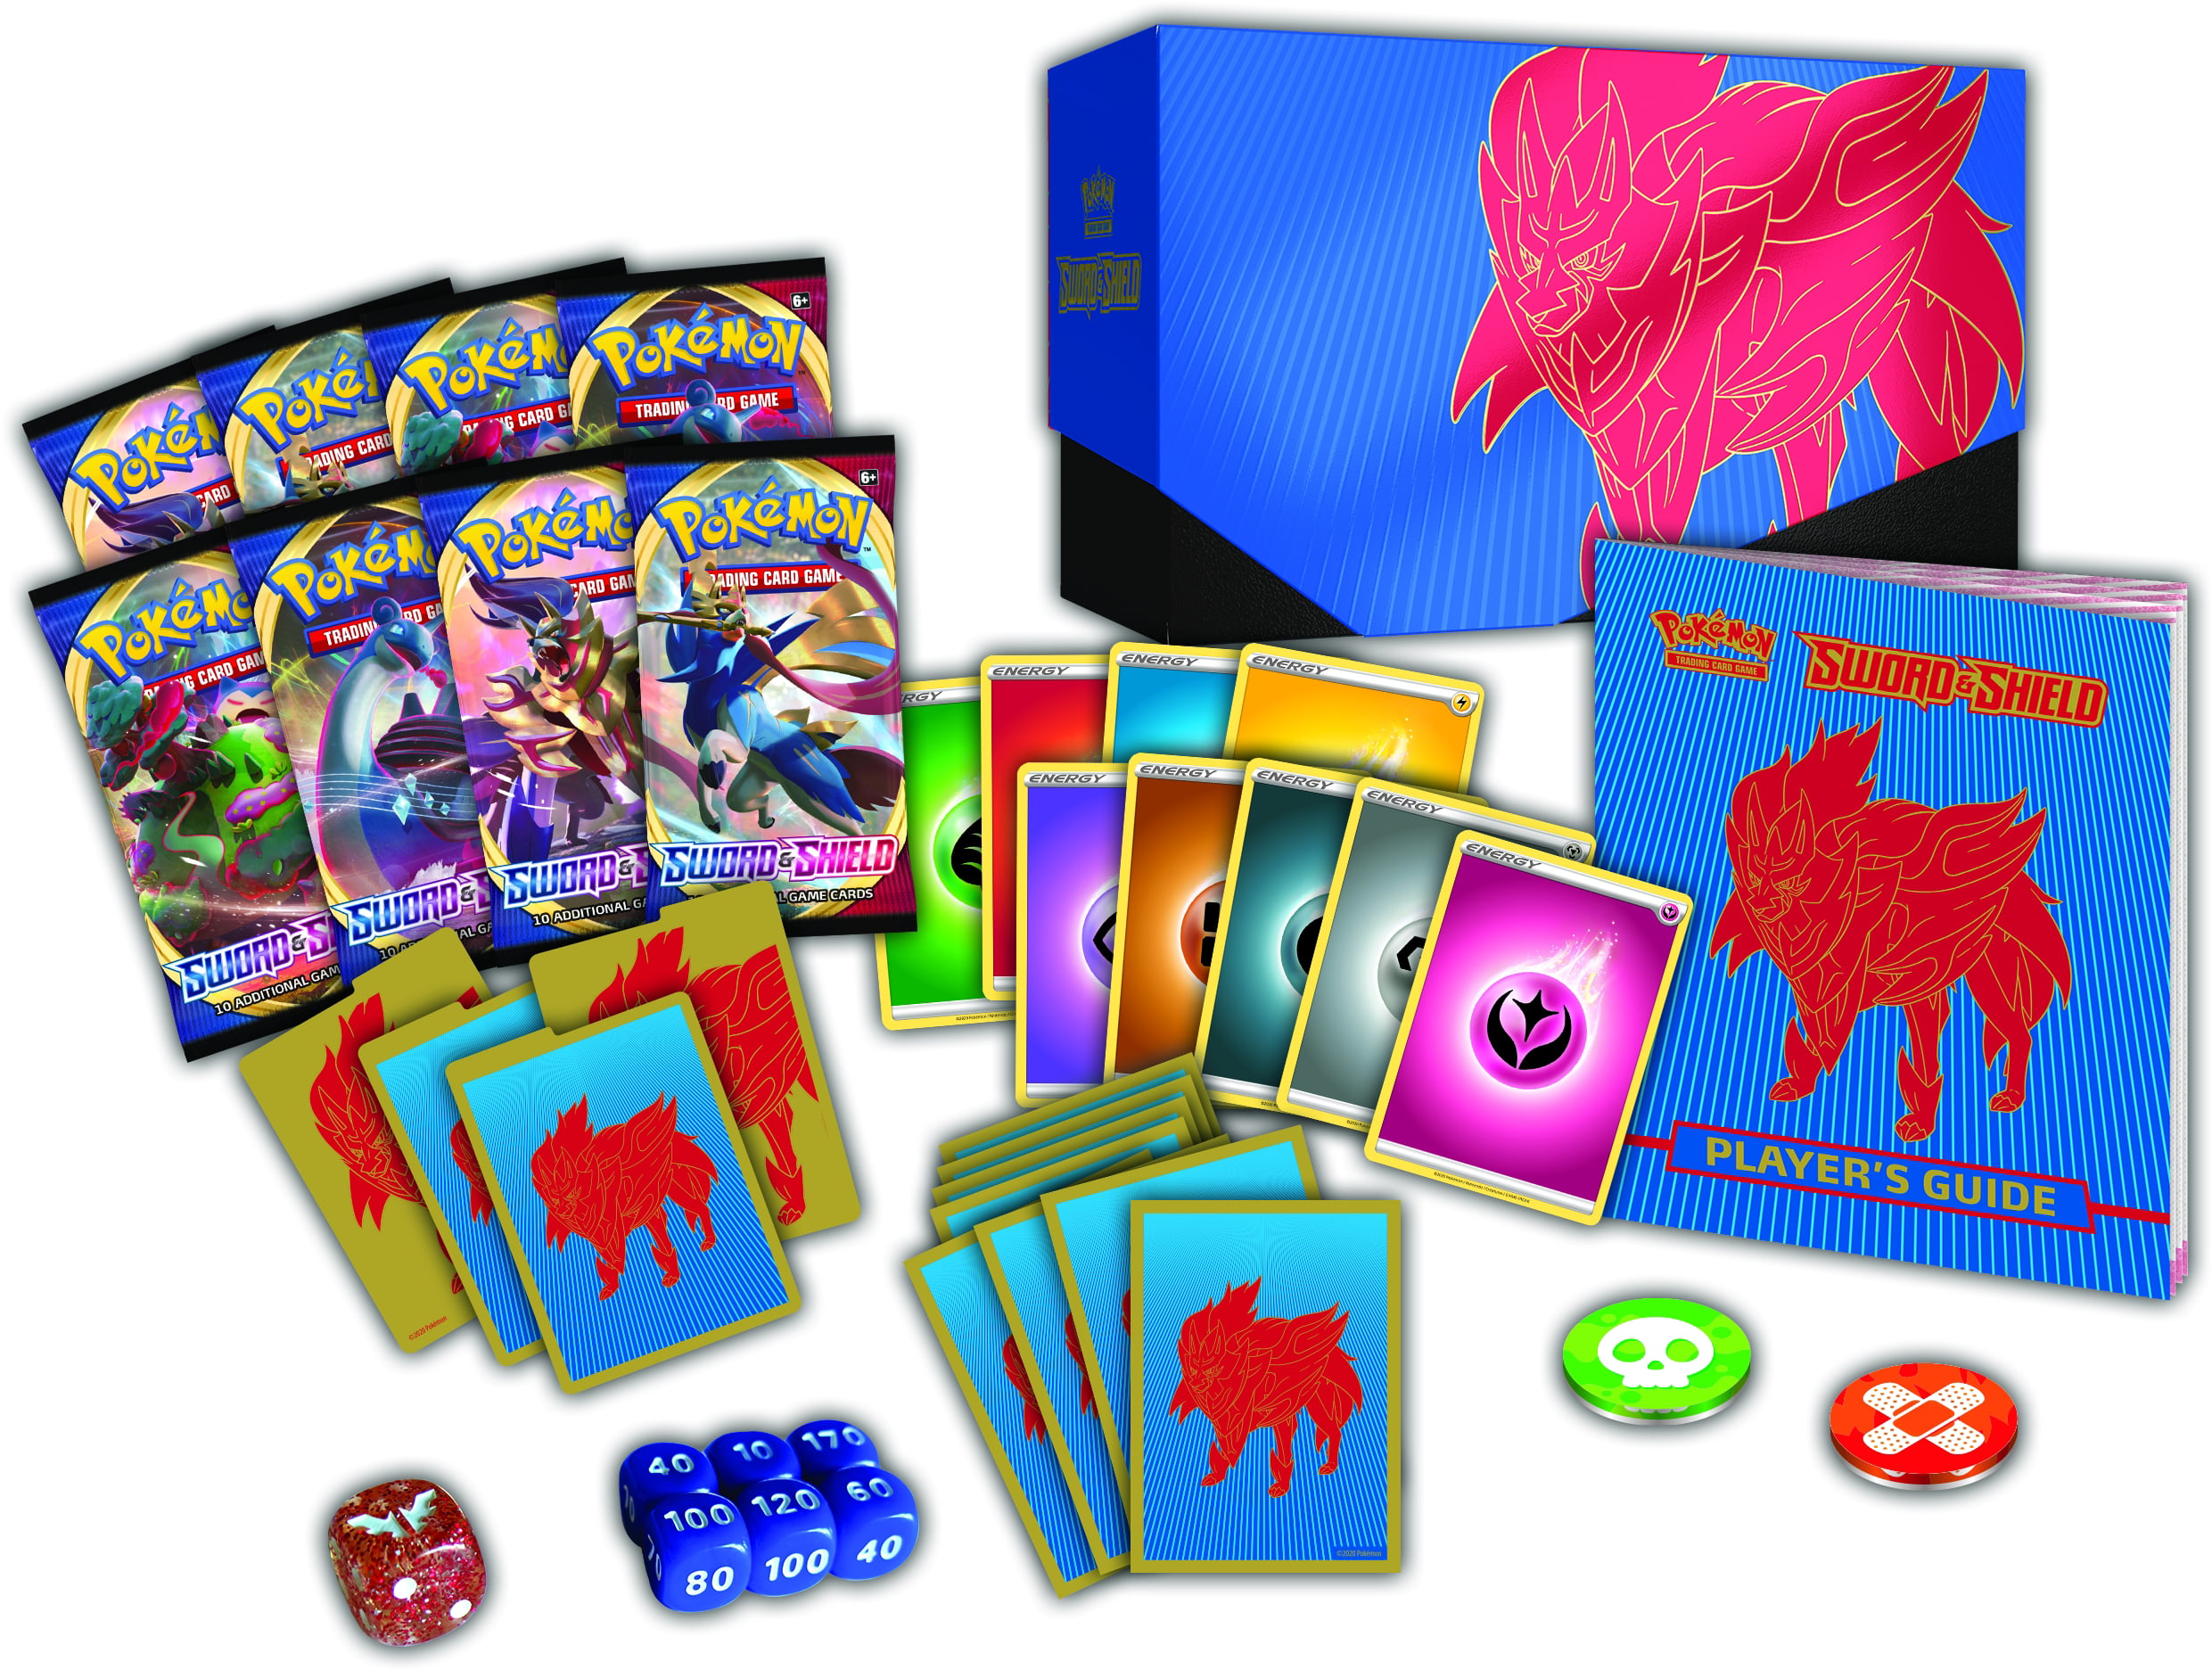 Pokémon TCG Sword & Shield Elite Trainer Box Plus Zamazenta Card Game POK82743 for sale online 